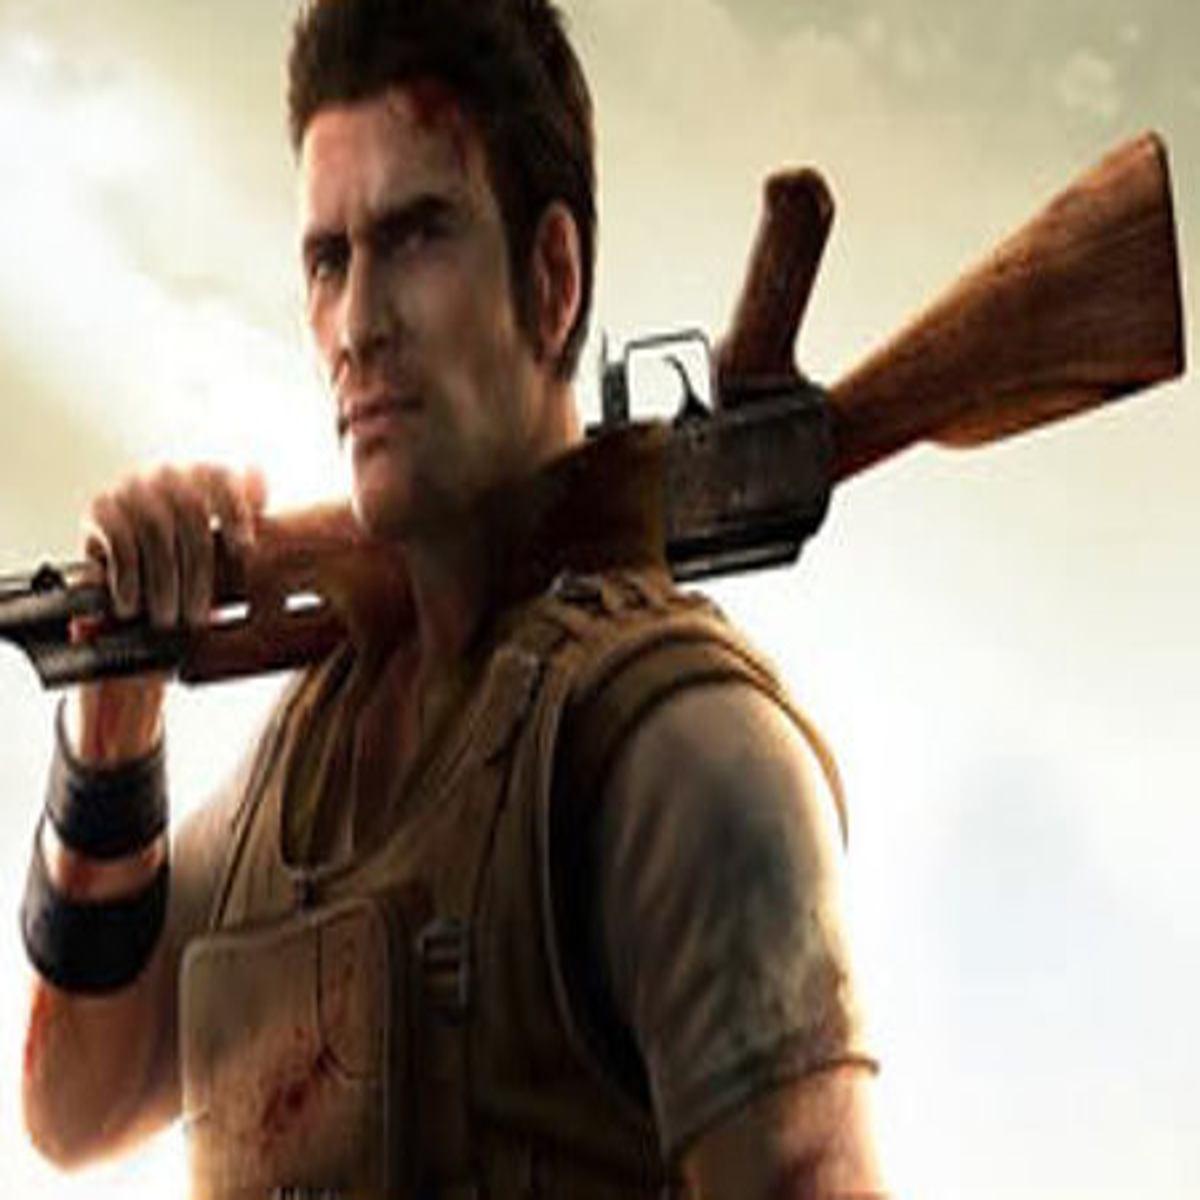 Far Cry 2 (Usado) - PS3 - Shock Games